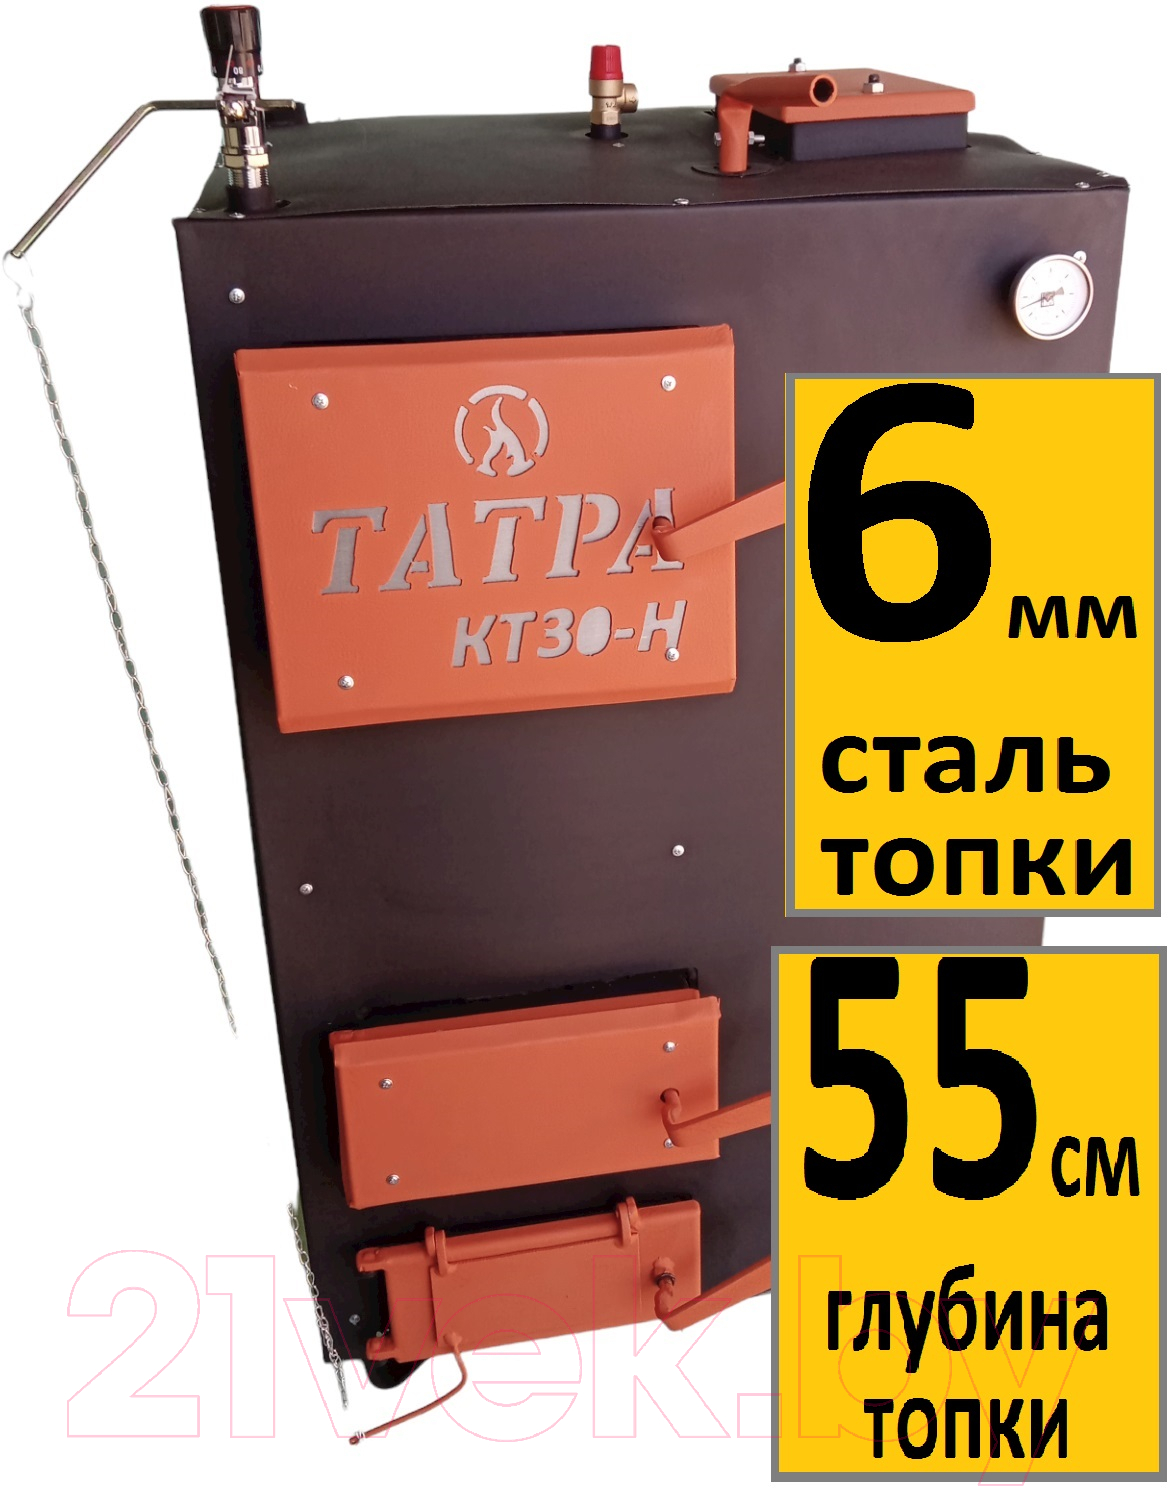 Твердотопливный котел Татра КТ30-НП1